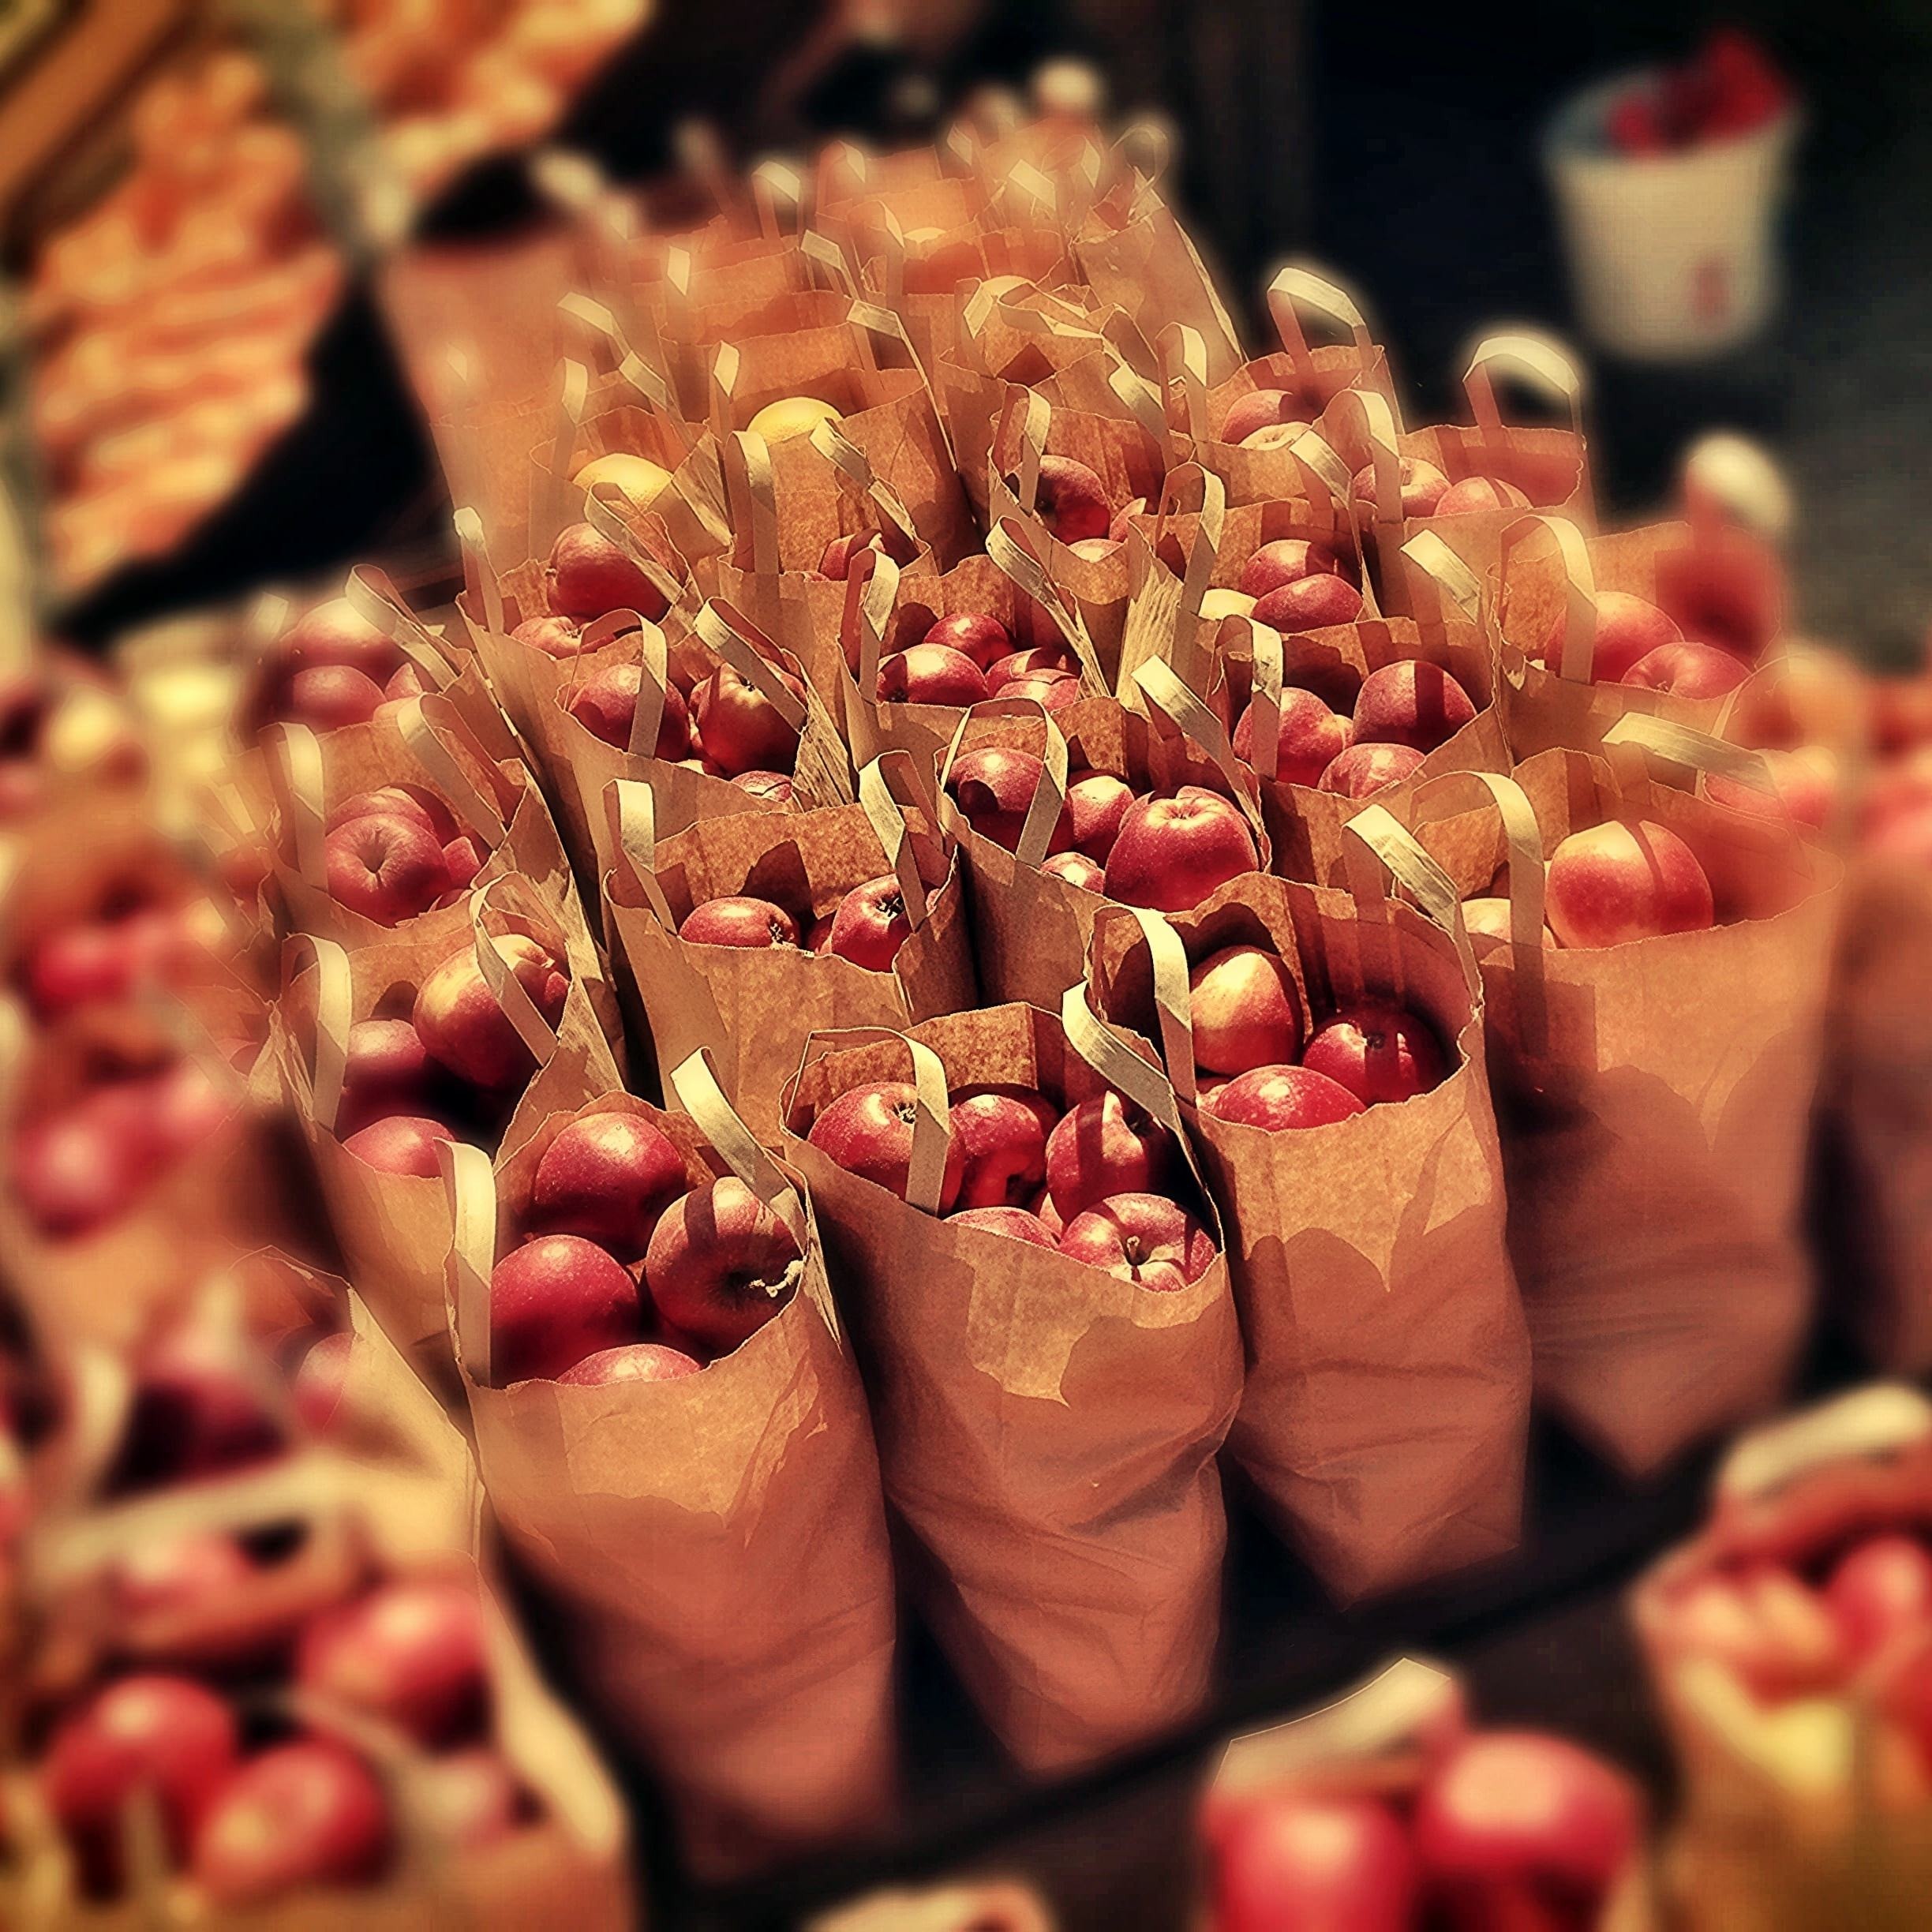 apples in brown bag